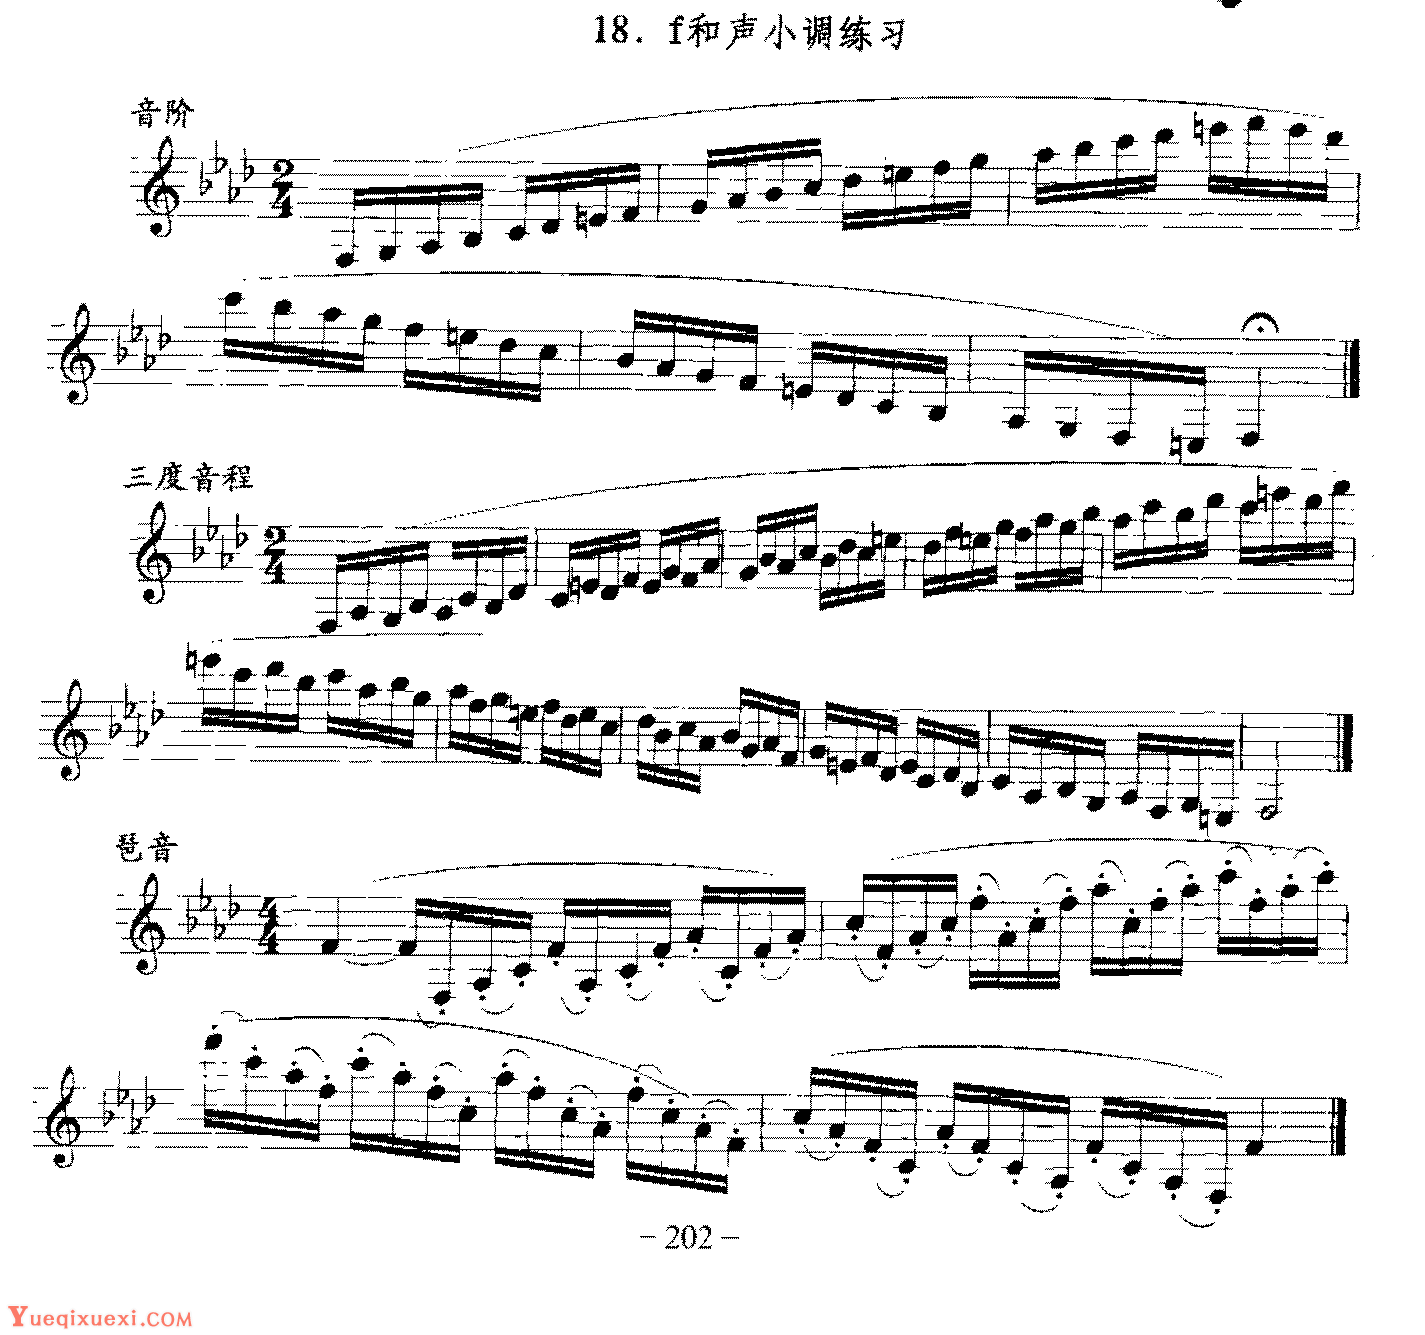 单簧管日常基础技术练习曲《f和声小调练习》